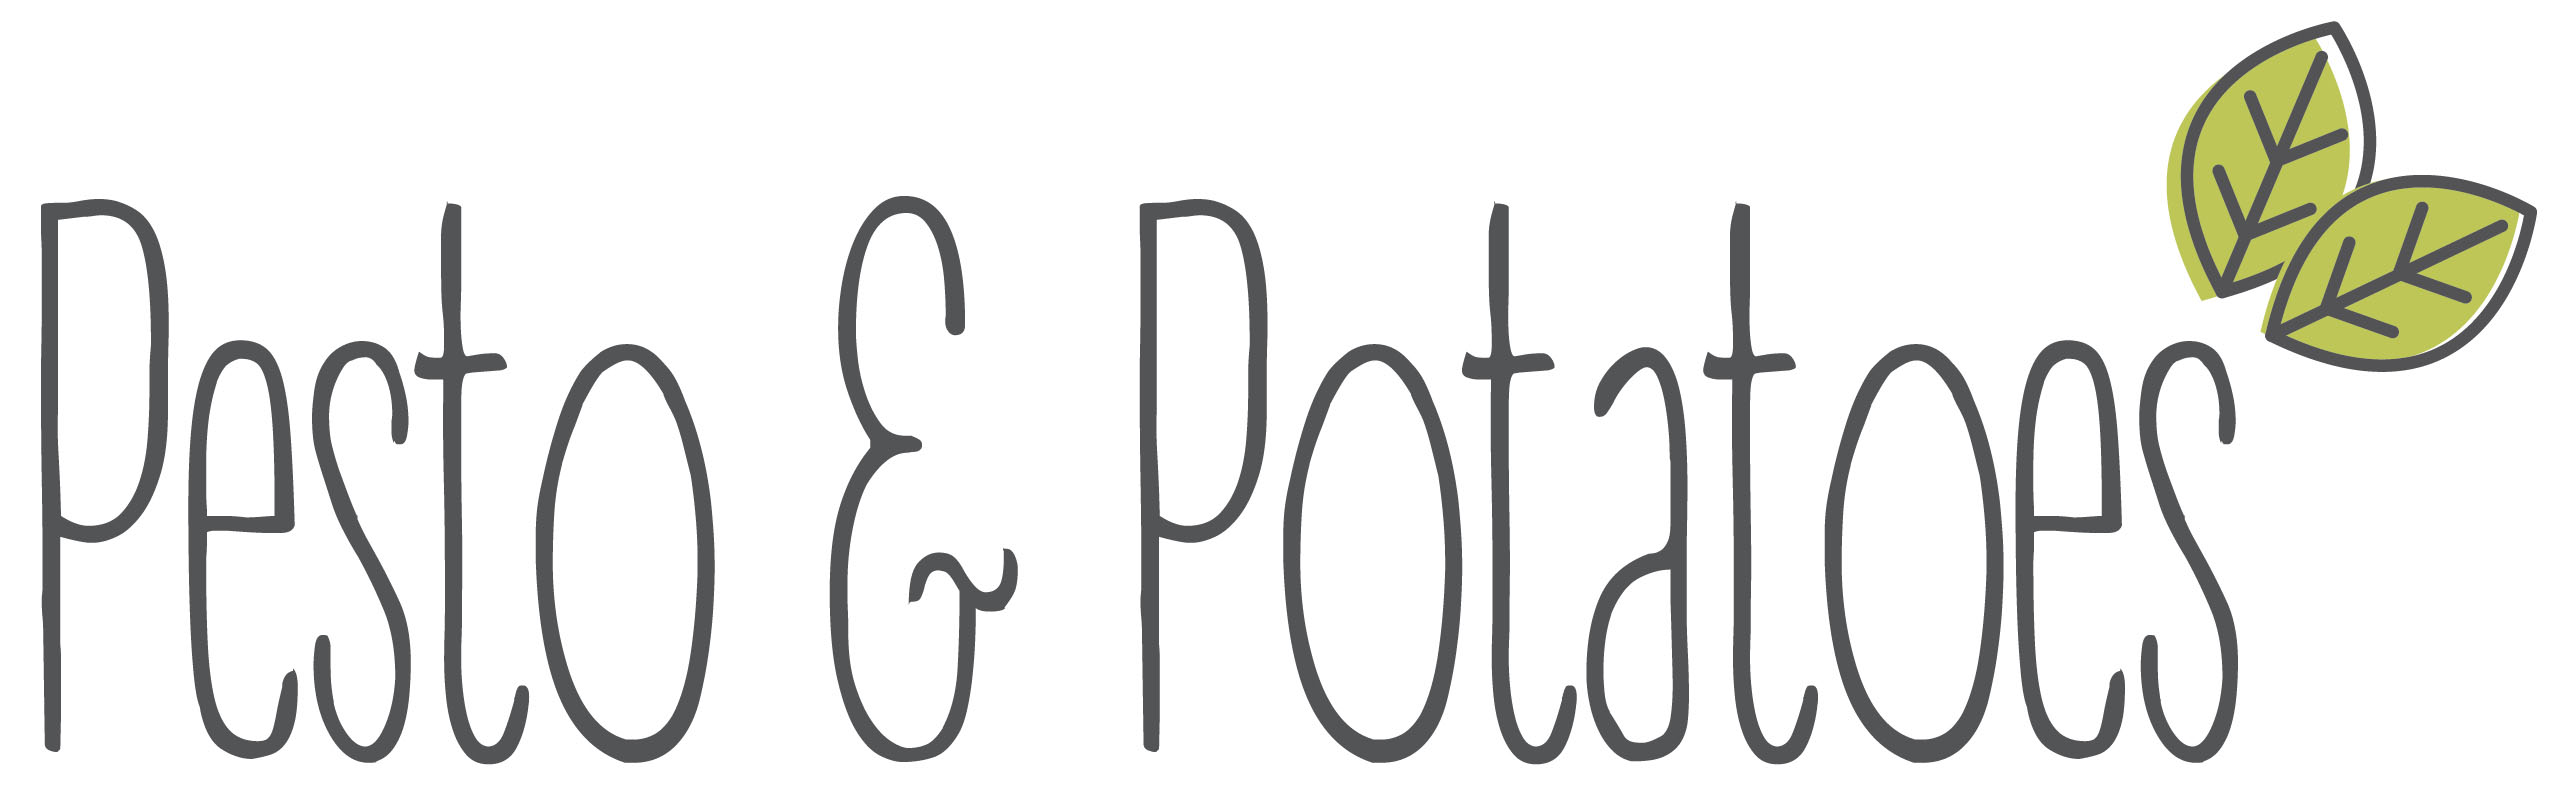 Pesto and Potatoes